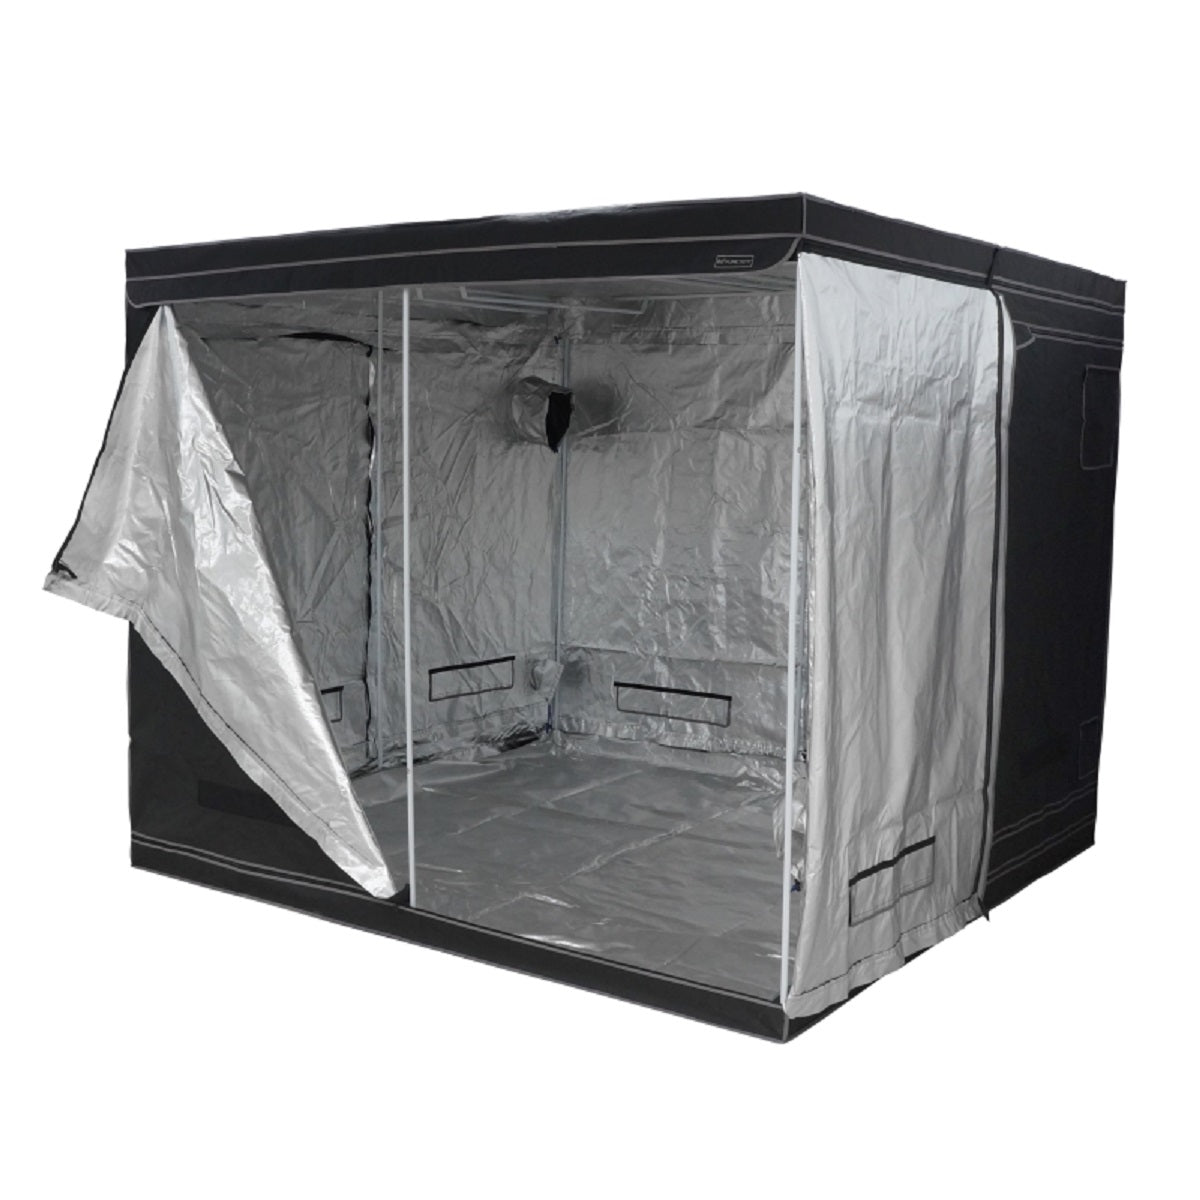 Box de culture indoor Pure Tent 240x240x200cm